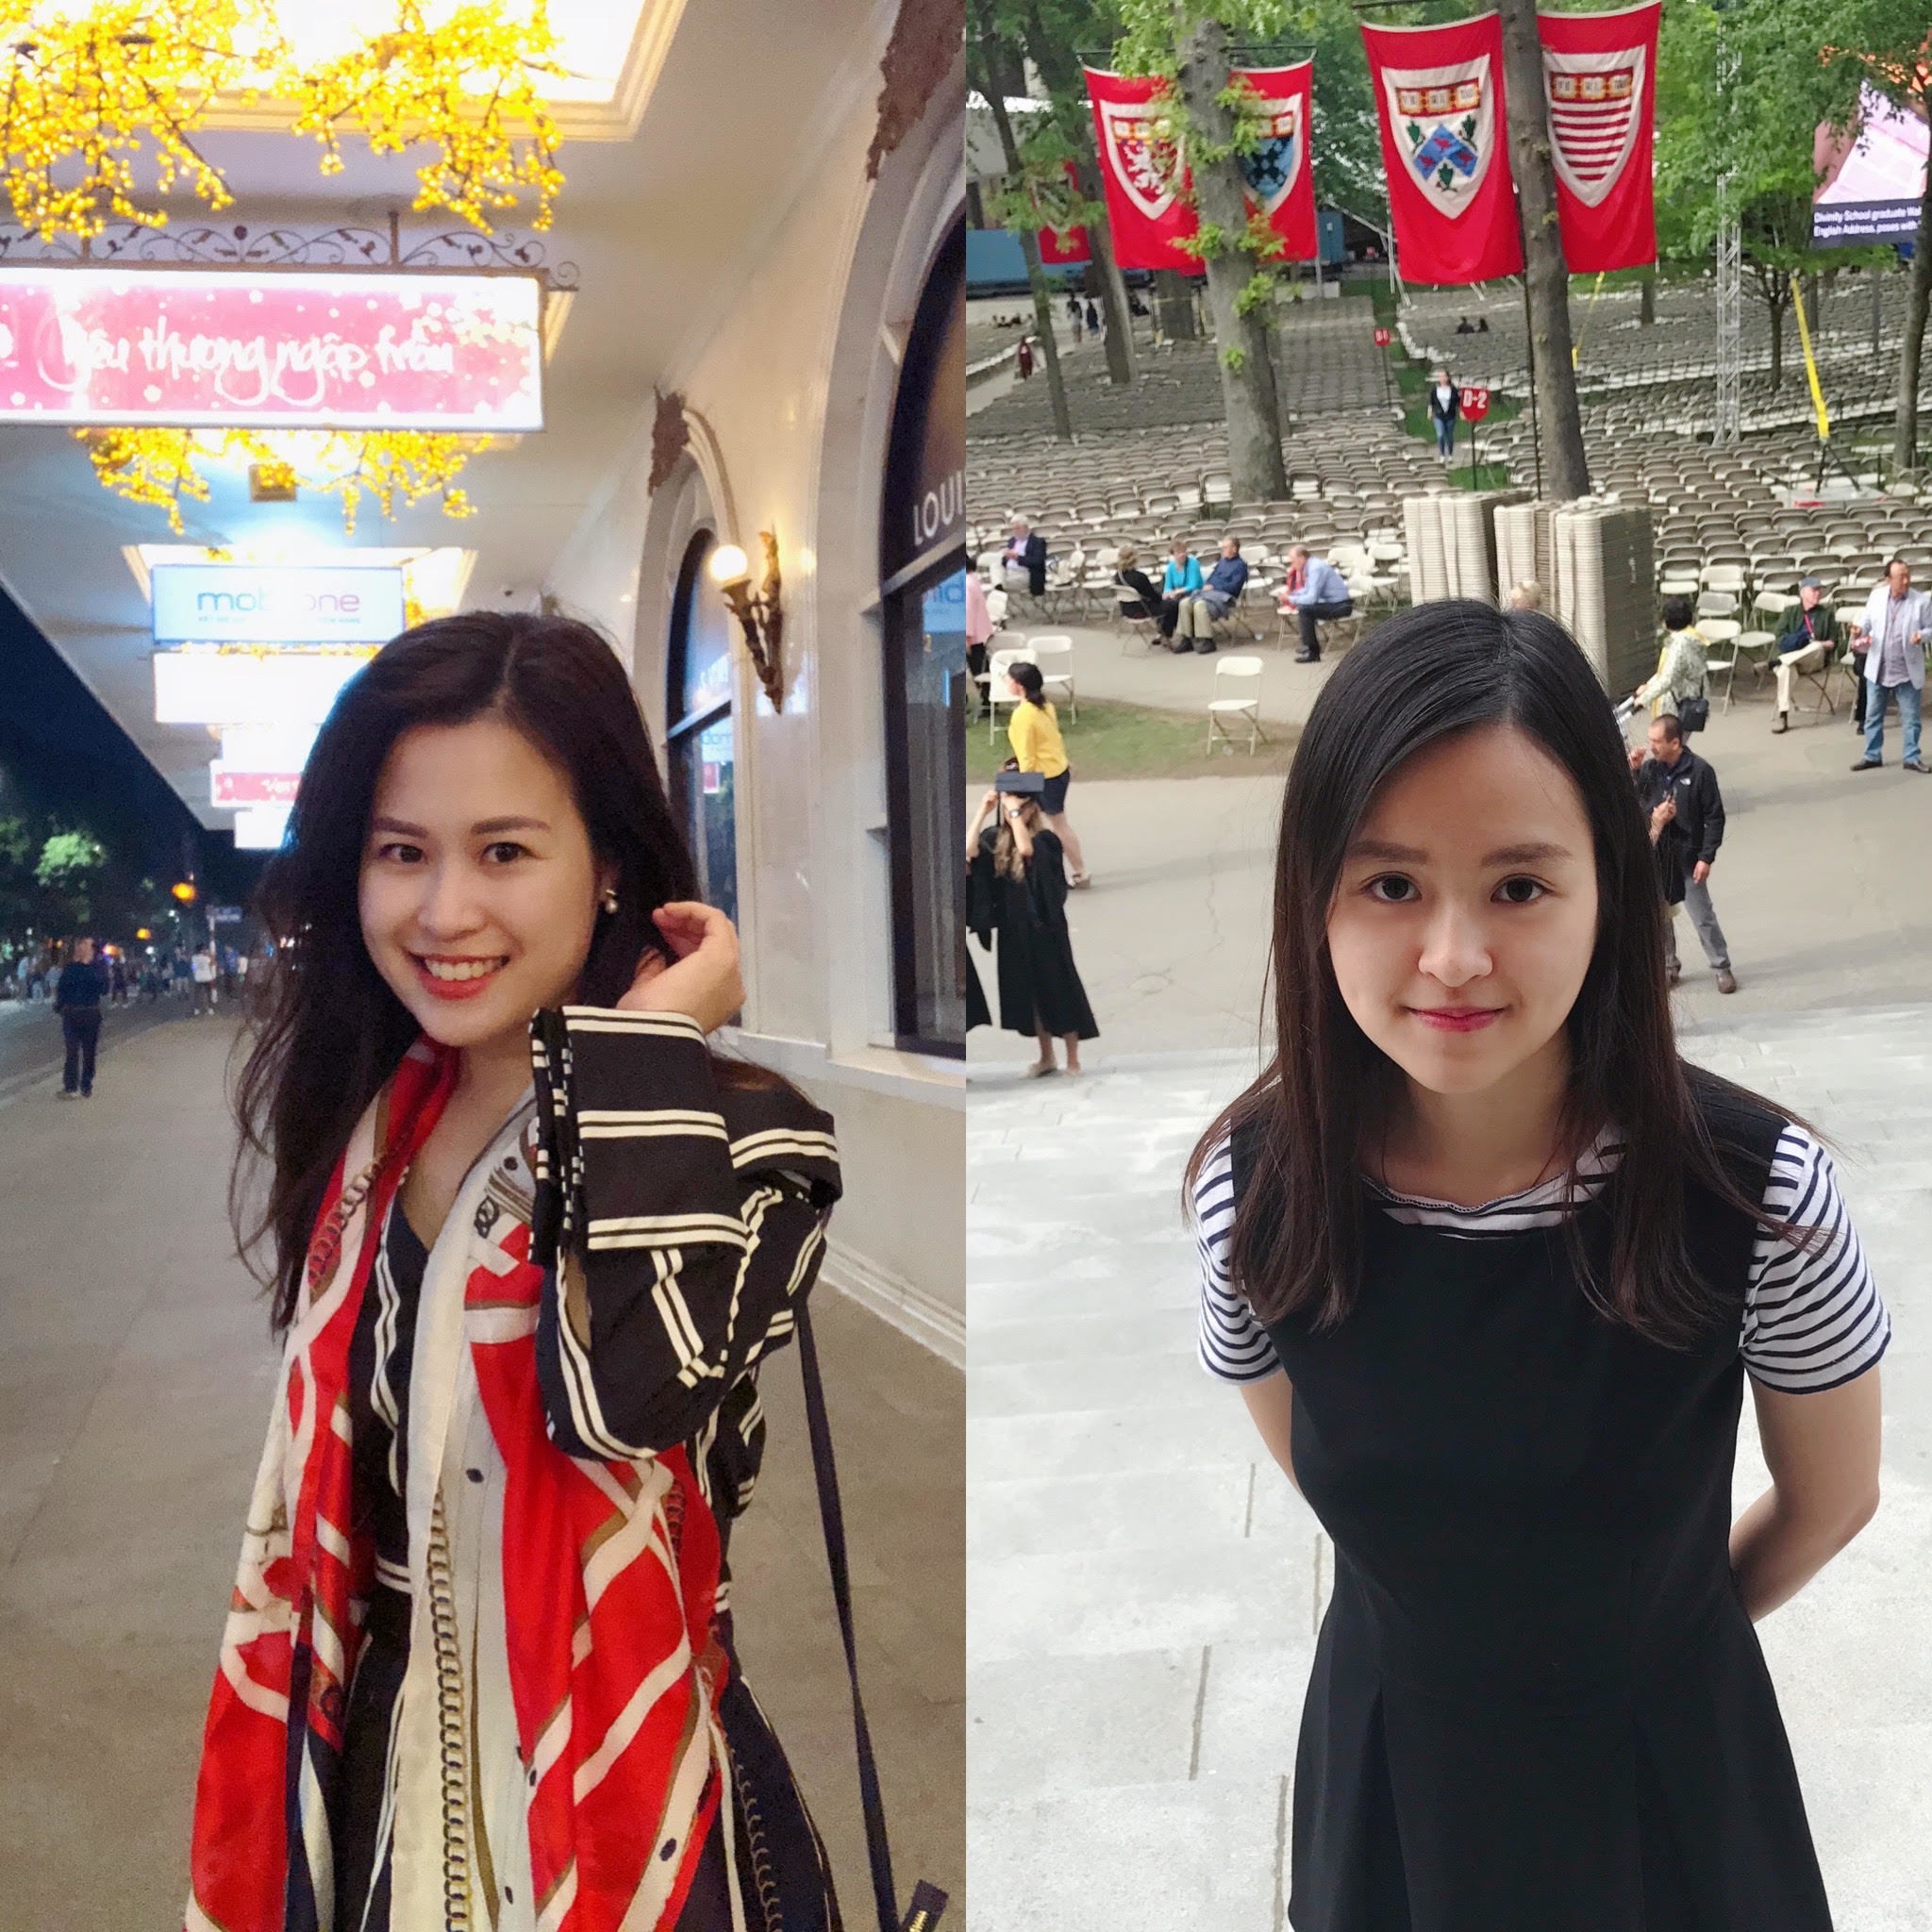 
Hà Anh và Hiền Anh – hai cô con gái tài năng và giỏi giang của chị Thanh Hà
